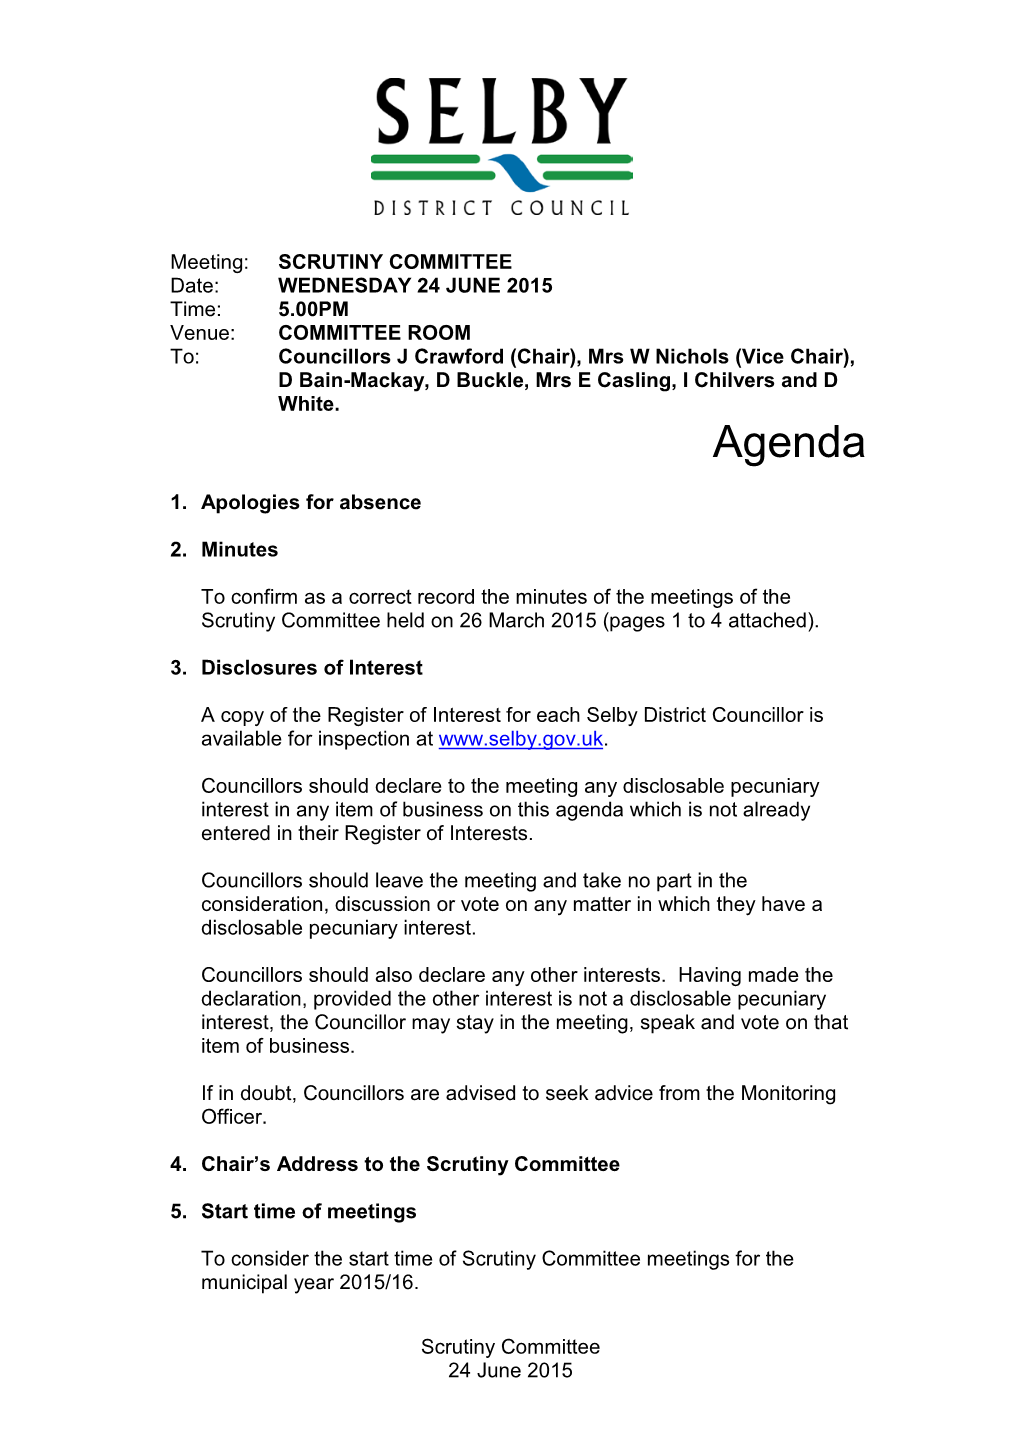 Scrutiny Committee Agenda